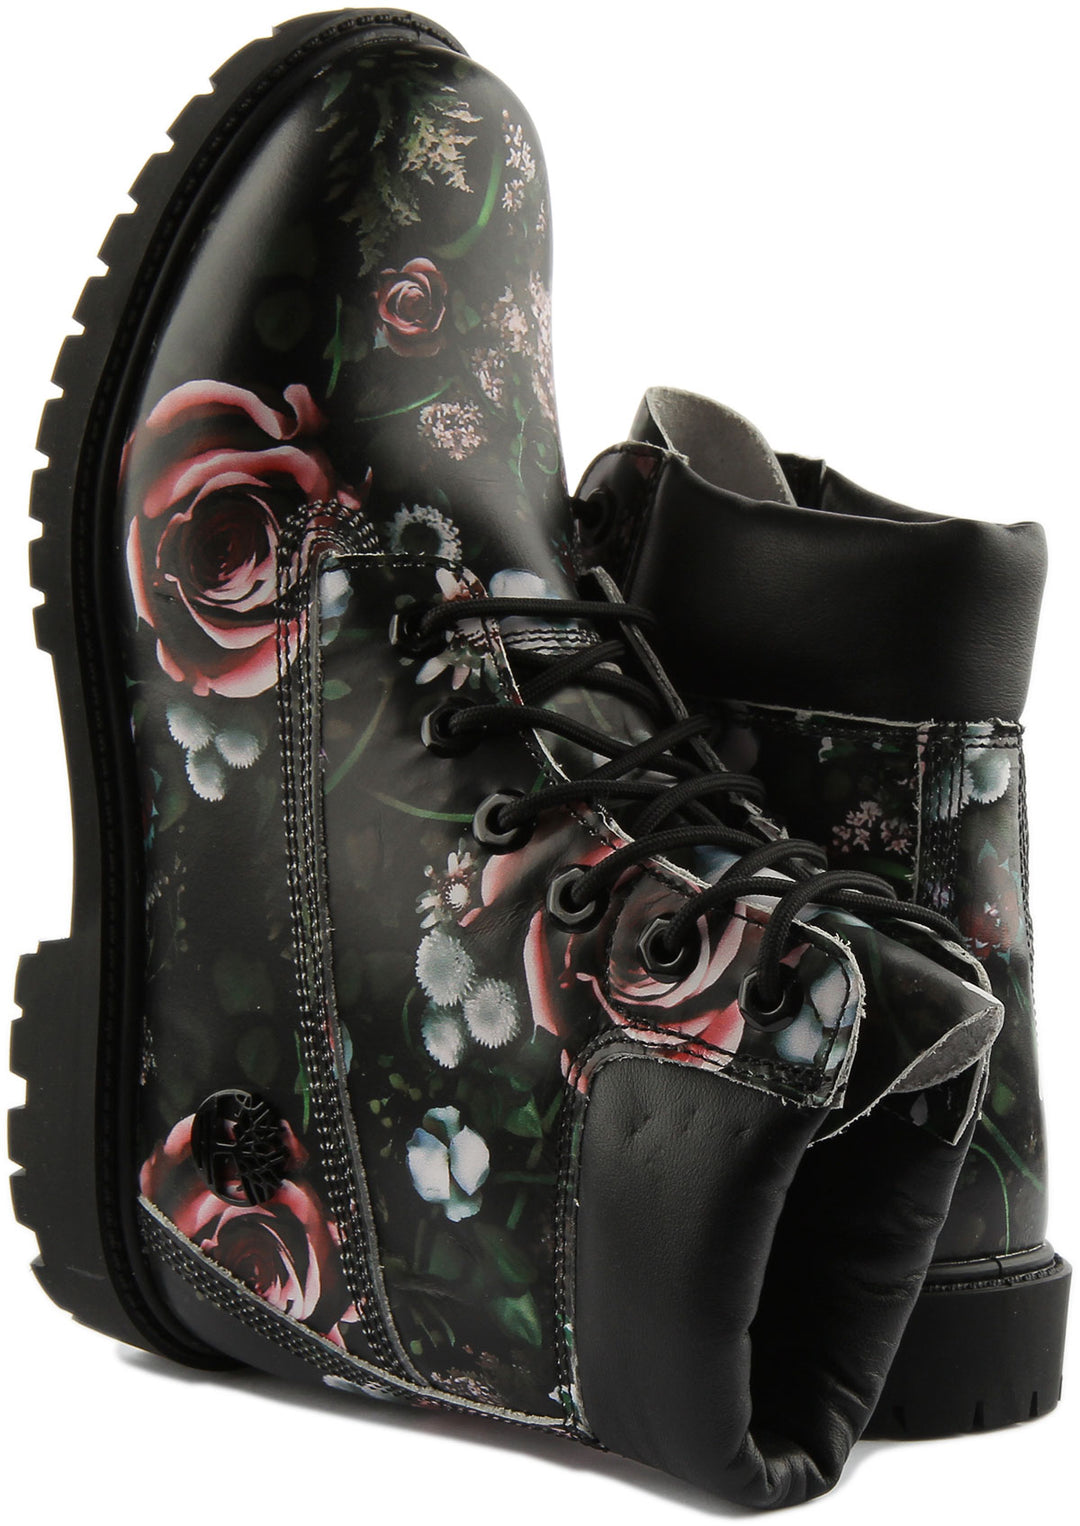 Timberland Heritage Frauen 6ch Schnürung Wasserdicht Leder Stiefel Schwarz Blumen